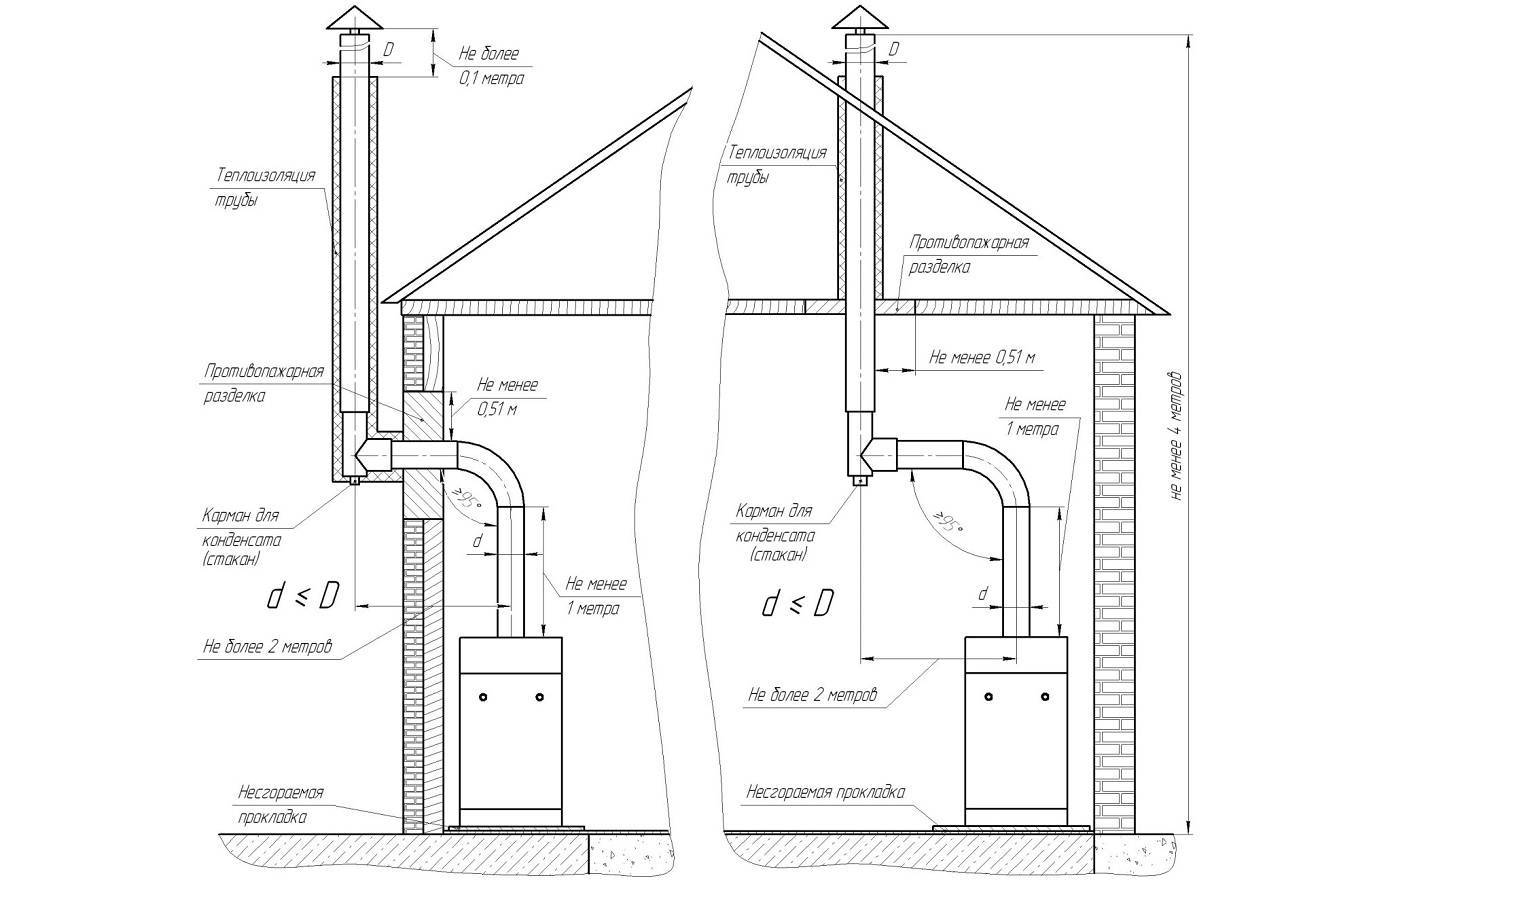 Установка газового котла в частном доме: требования, монтаж, подключение, как установить, размеры и правила, объем помещения, условия расположения, проект